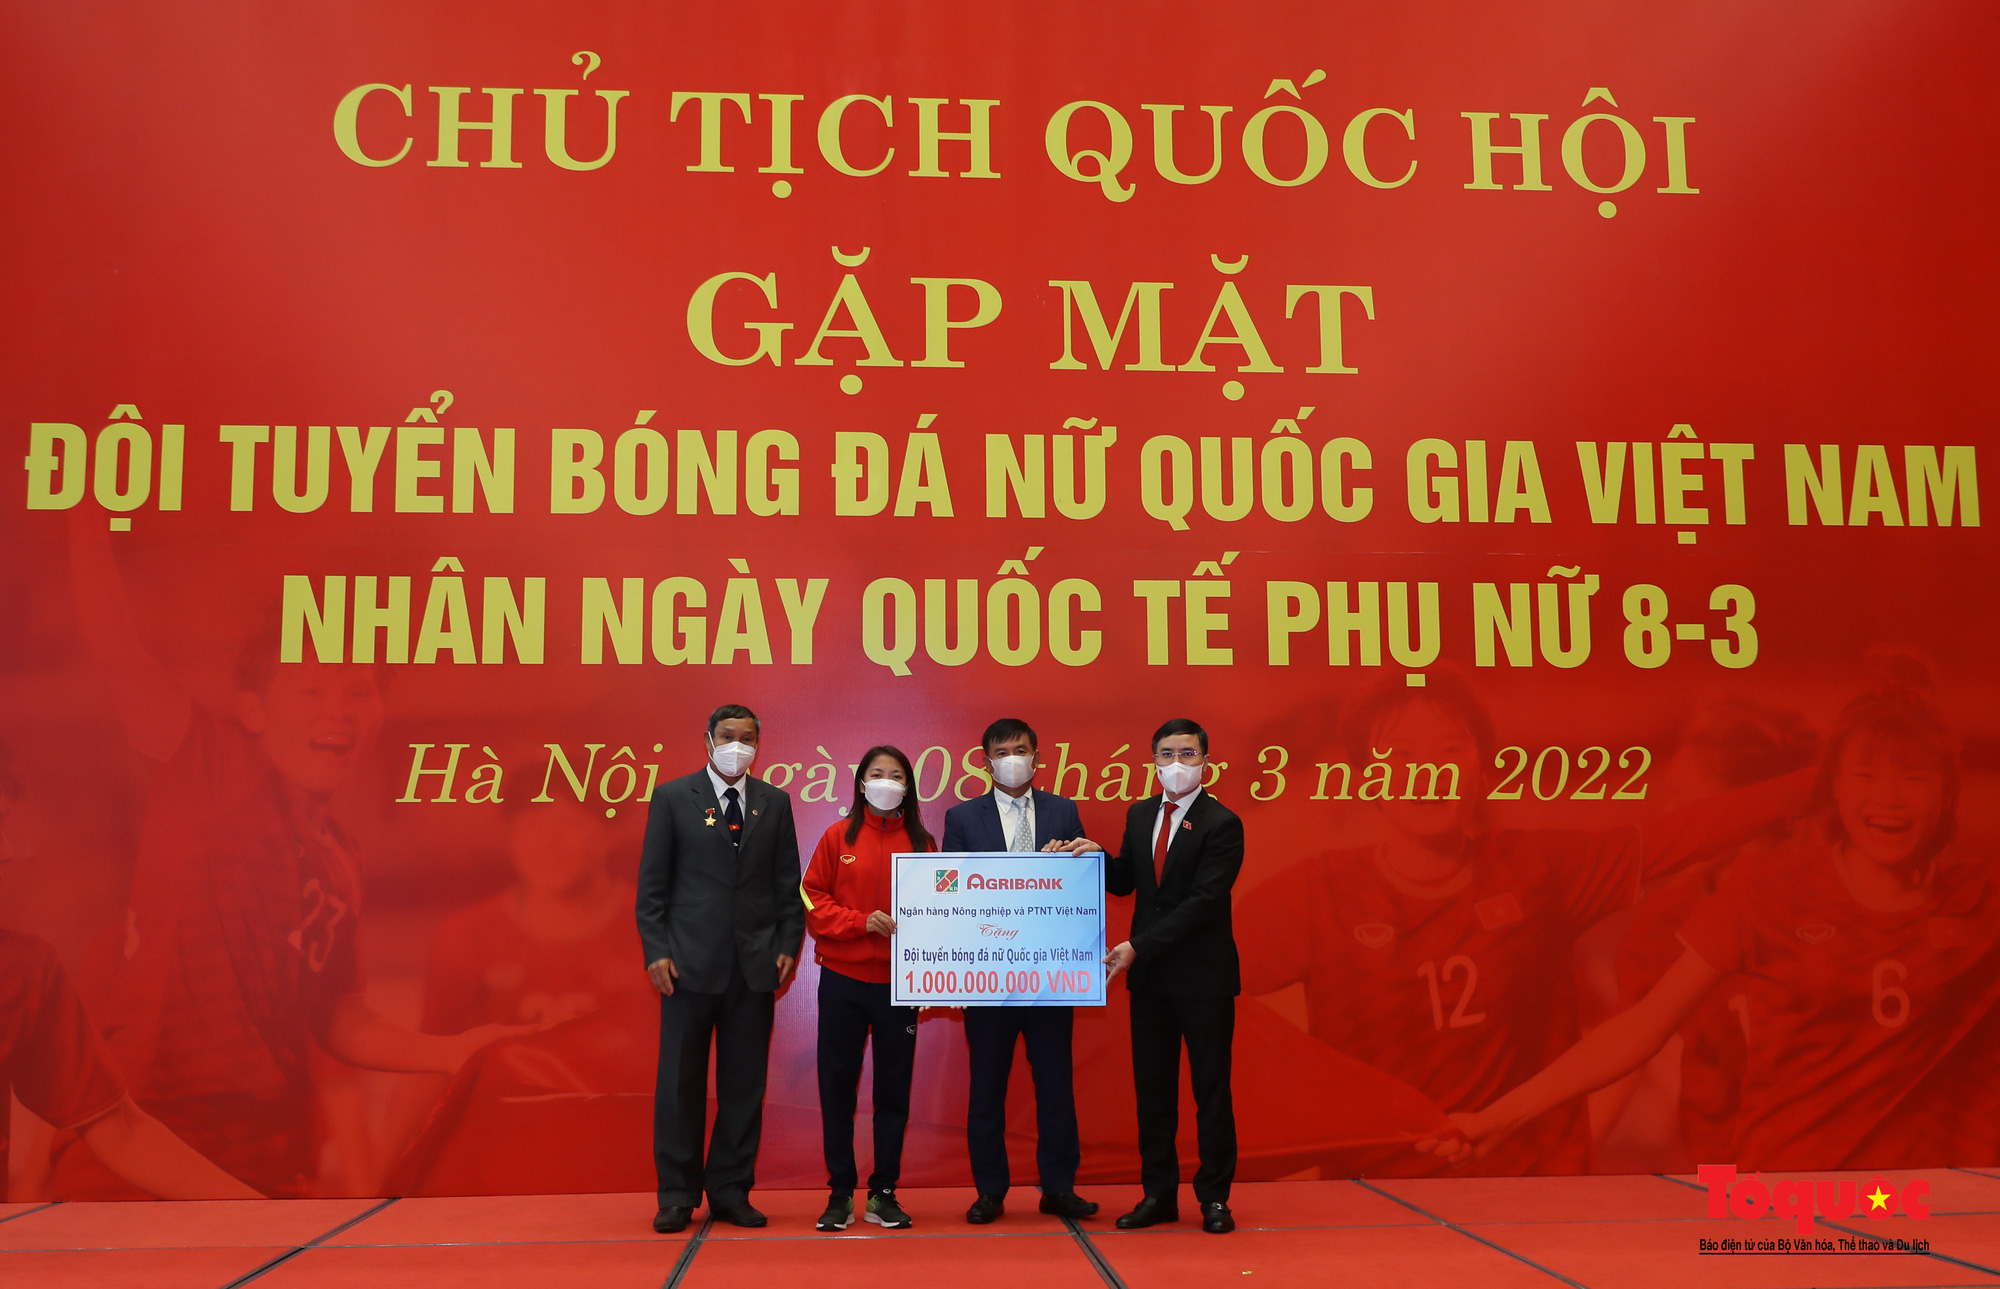 Chủ tịch Quốc hội Vương Đình Huệ gặp mặt Đội tuyển Bóng đá nữ Việt Nam - Ảnh 17.